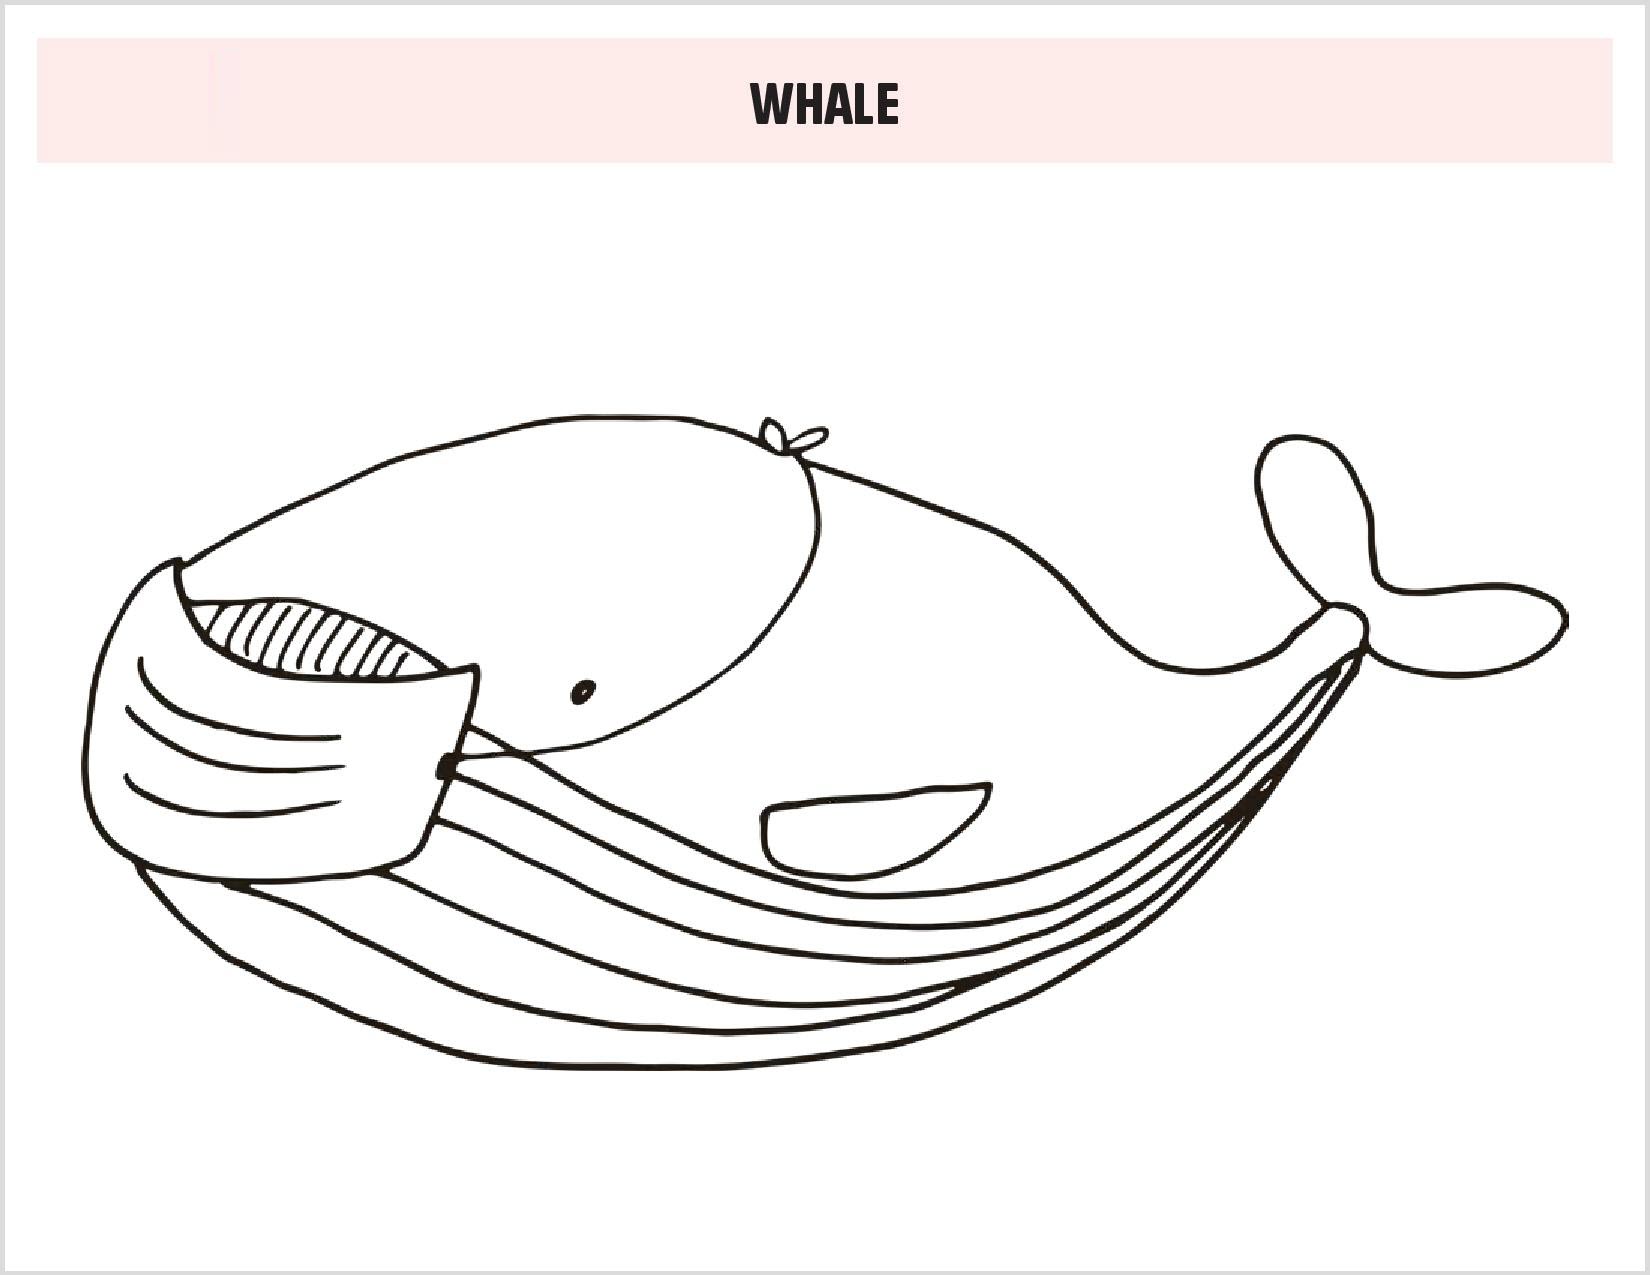 Tranh tô màu cá voi đẹp, hấp dẫn nhất